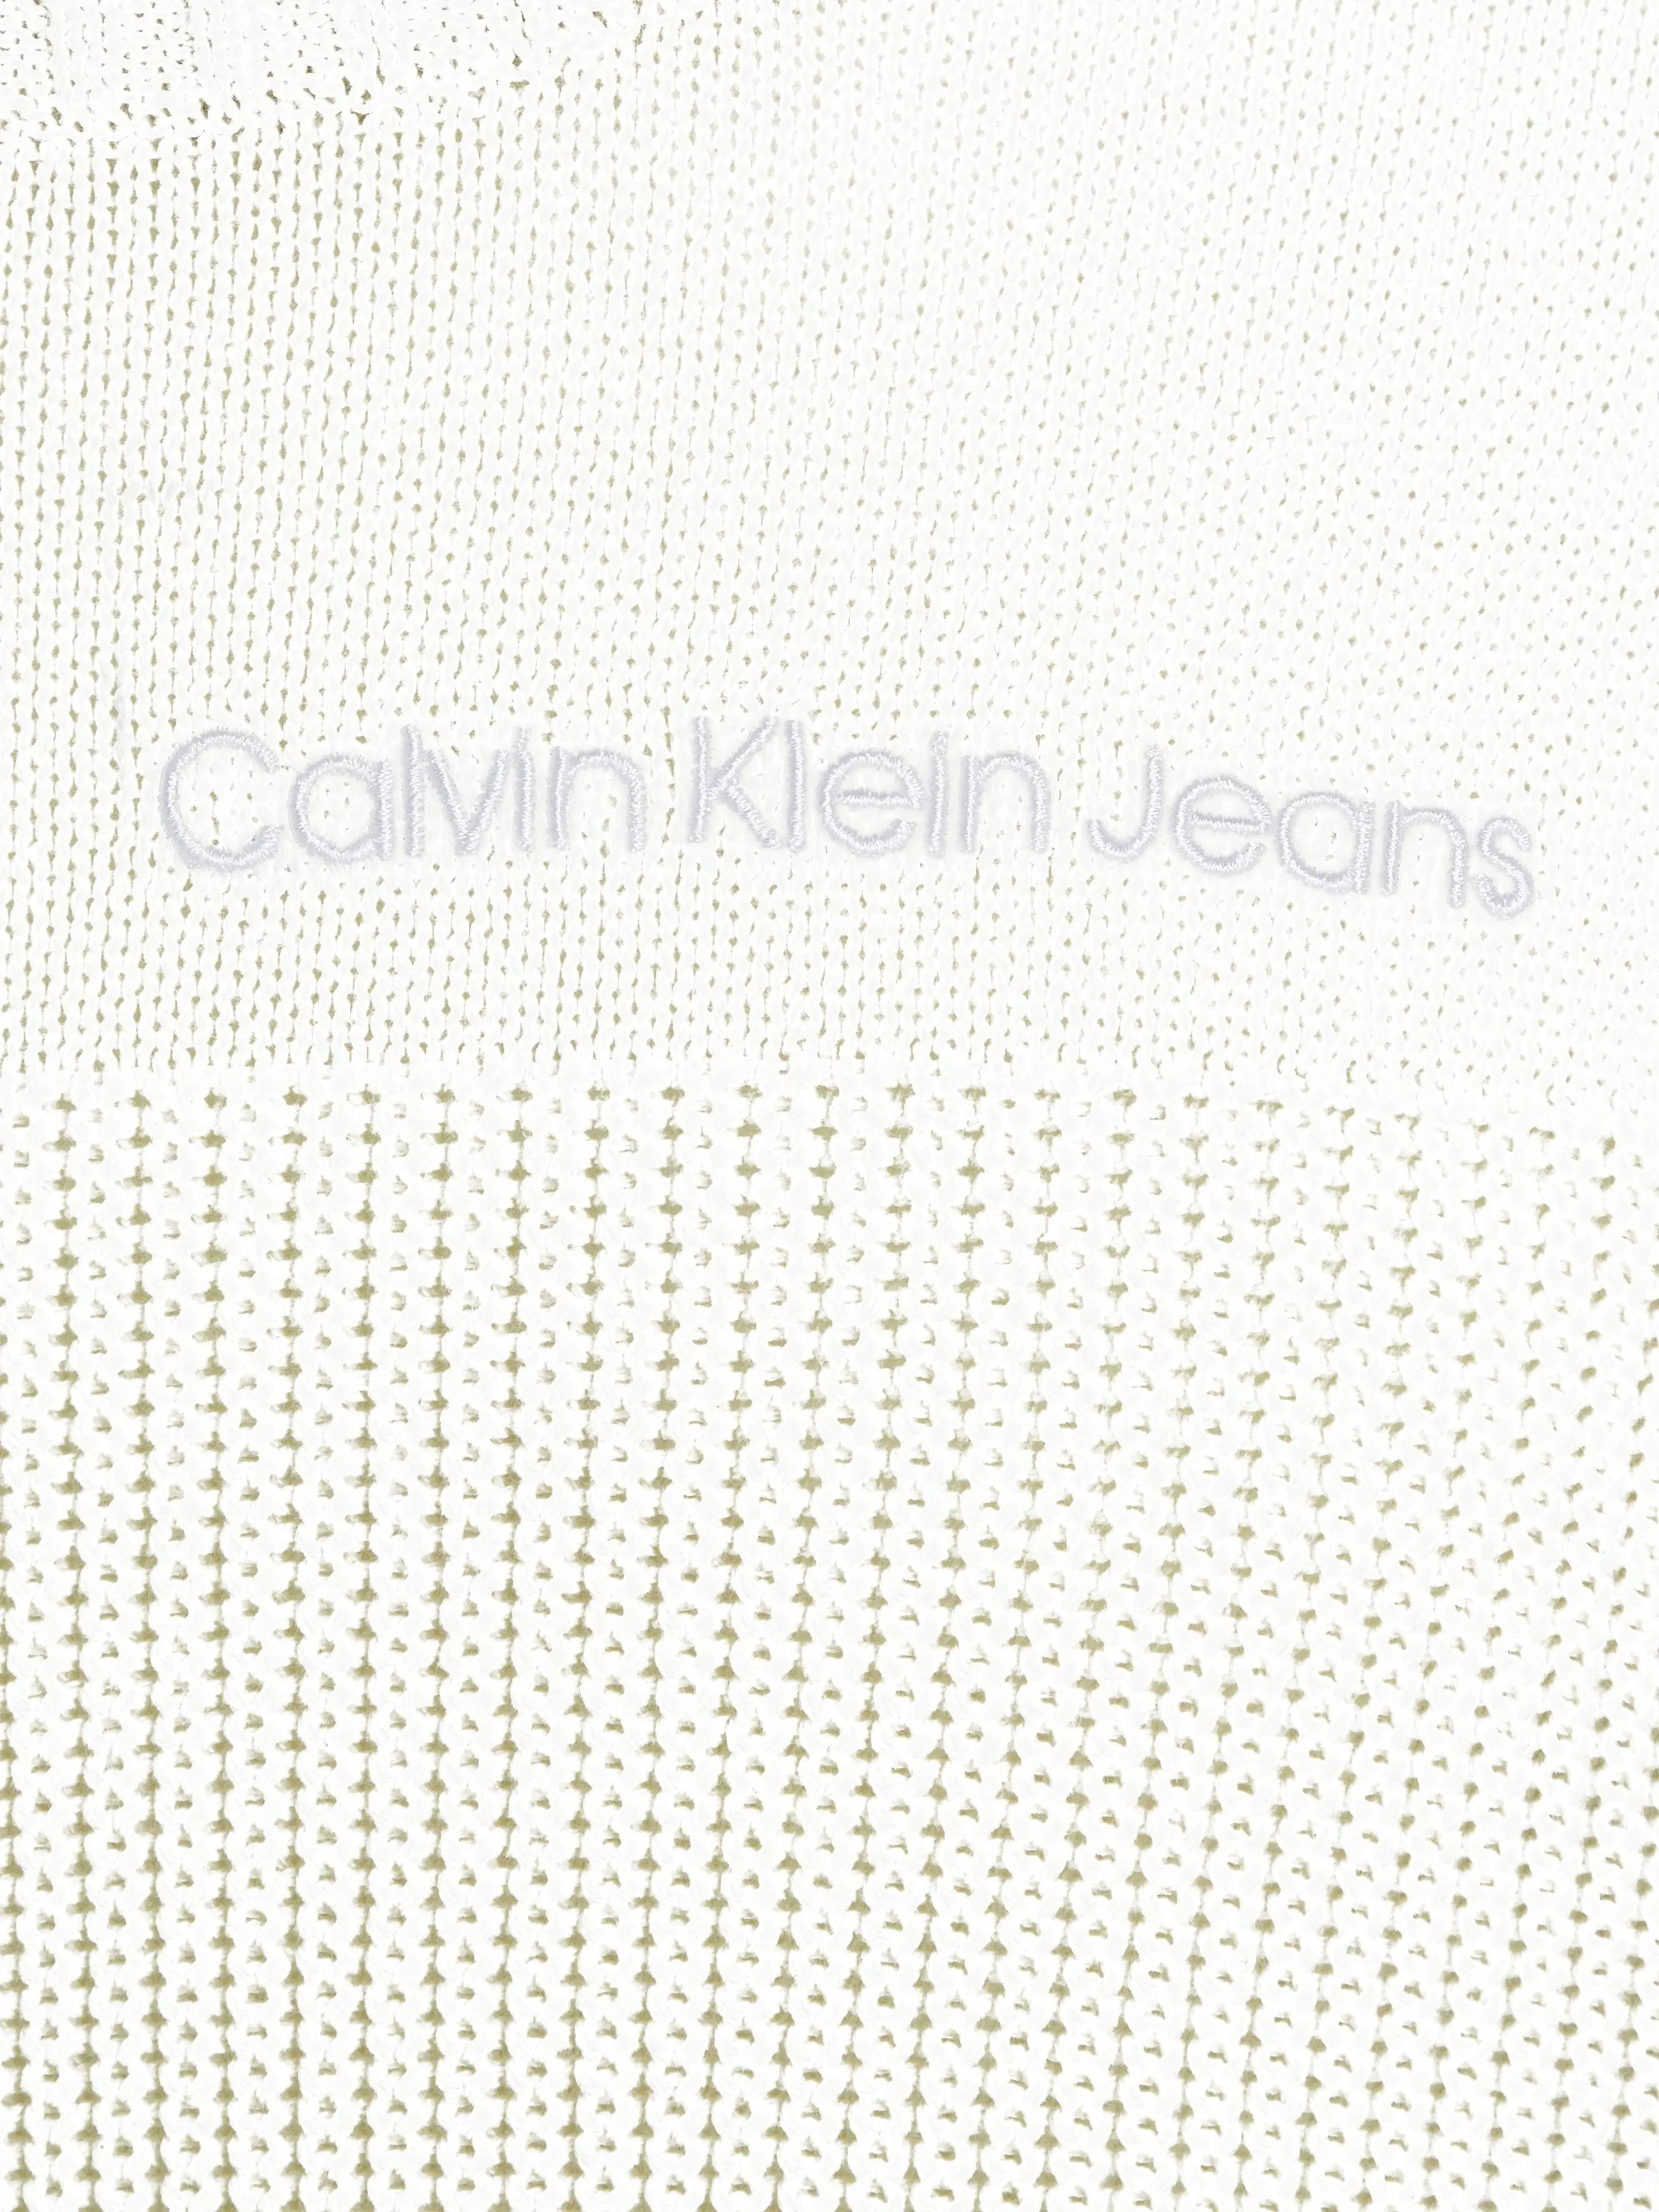 Calvin Klein Jeans Stitch blocking sweater